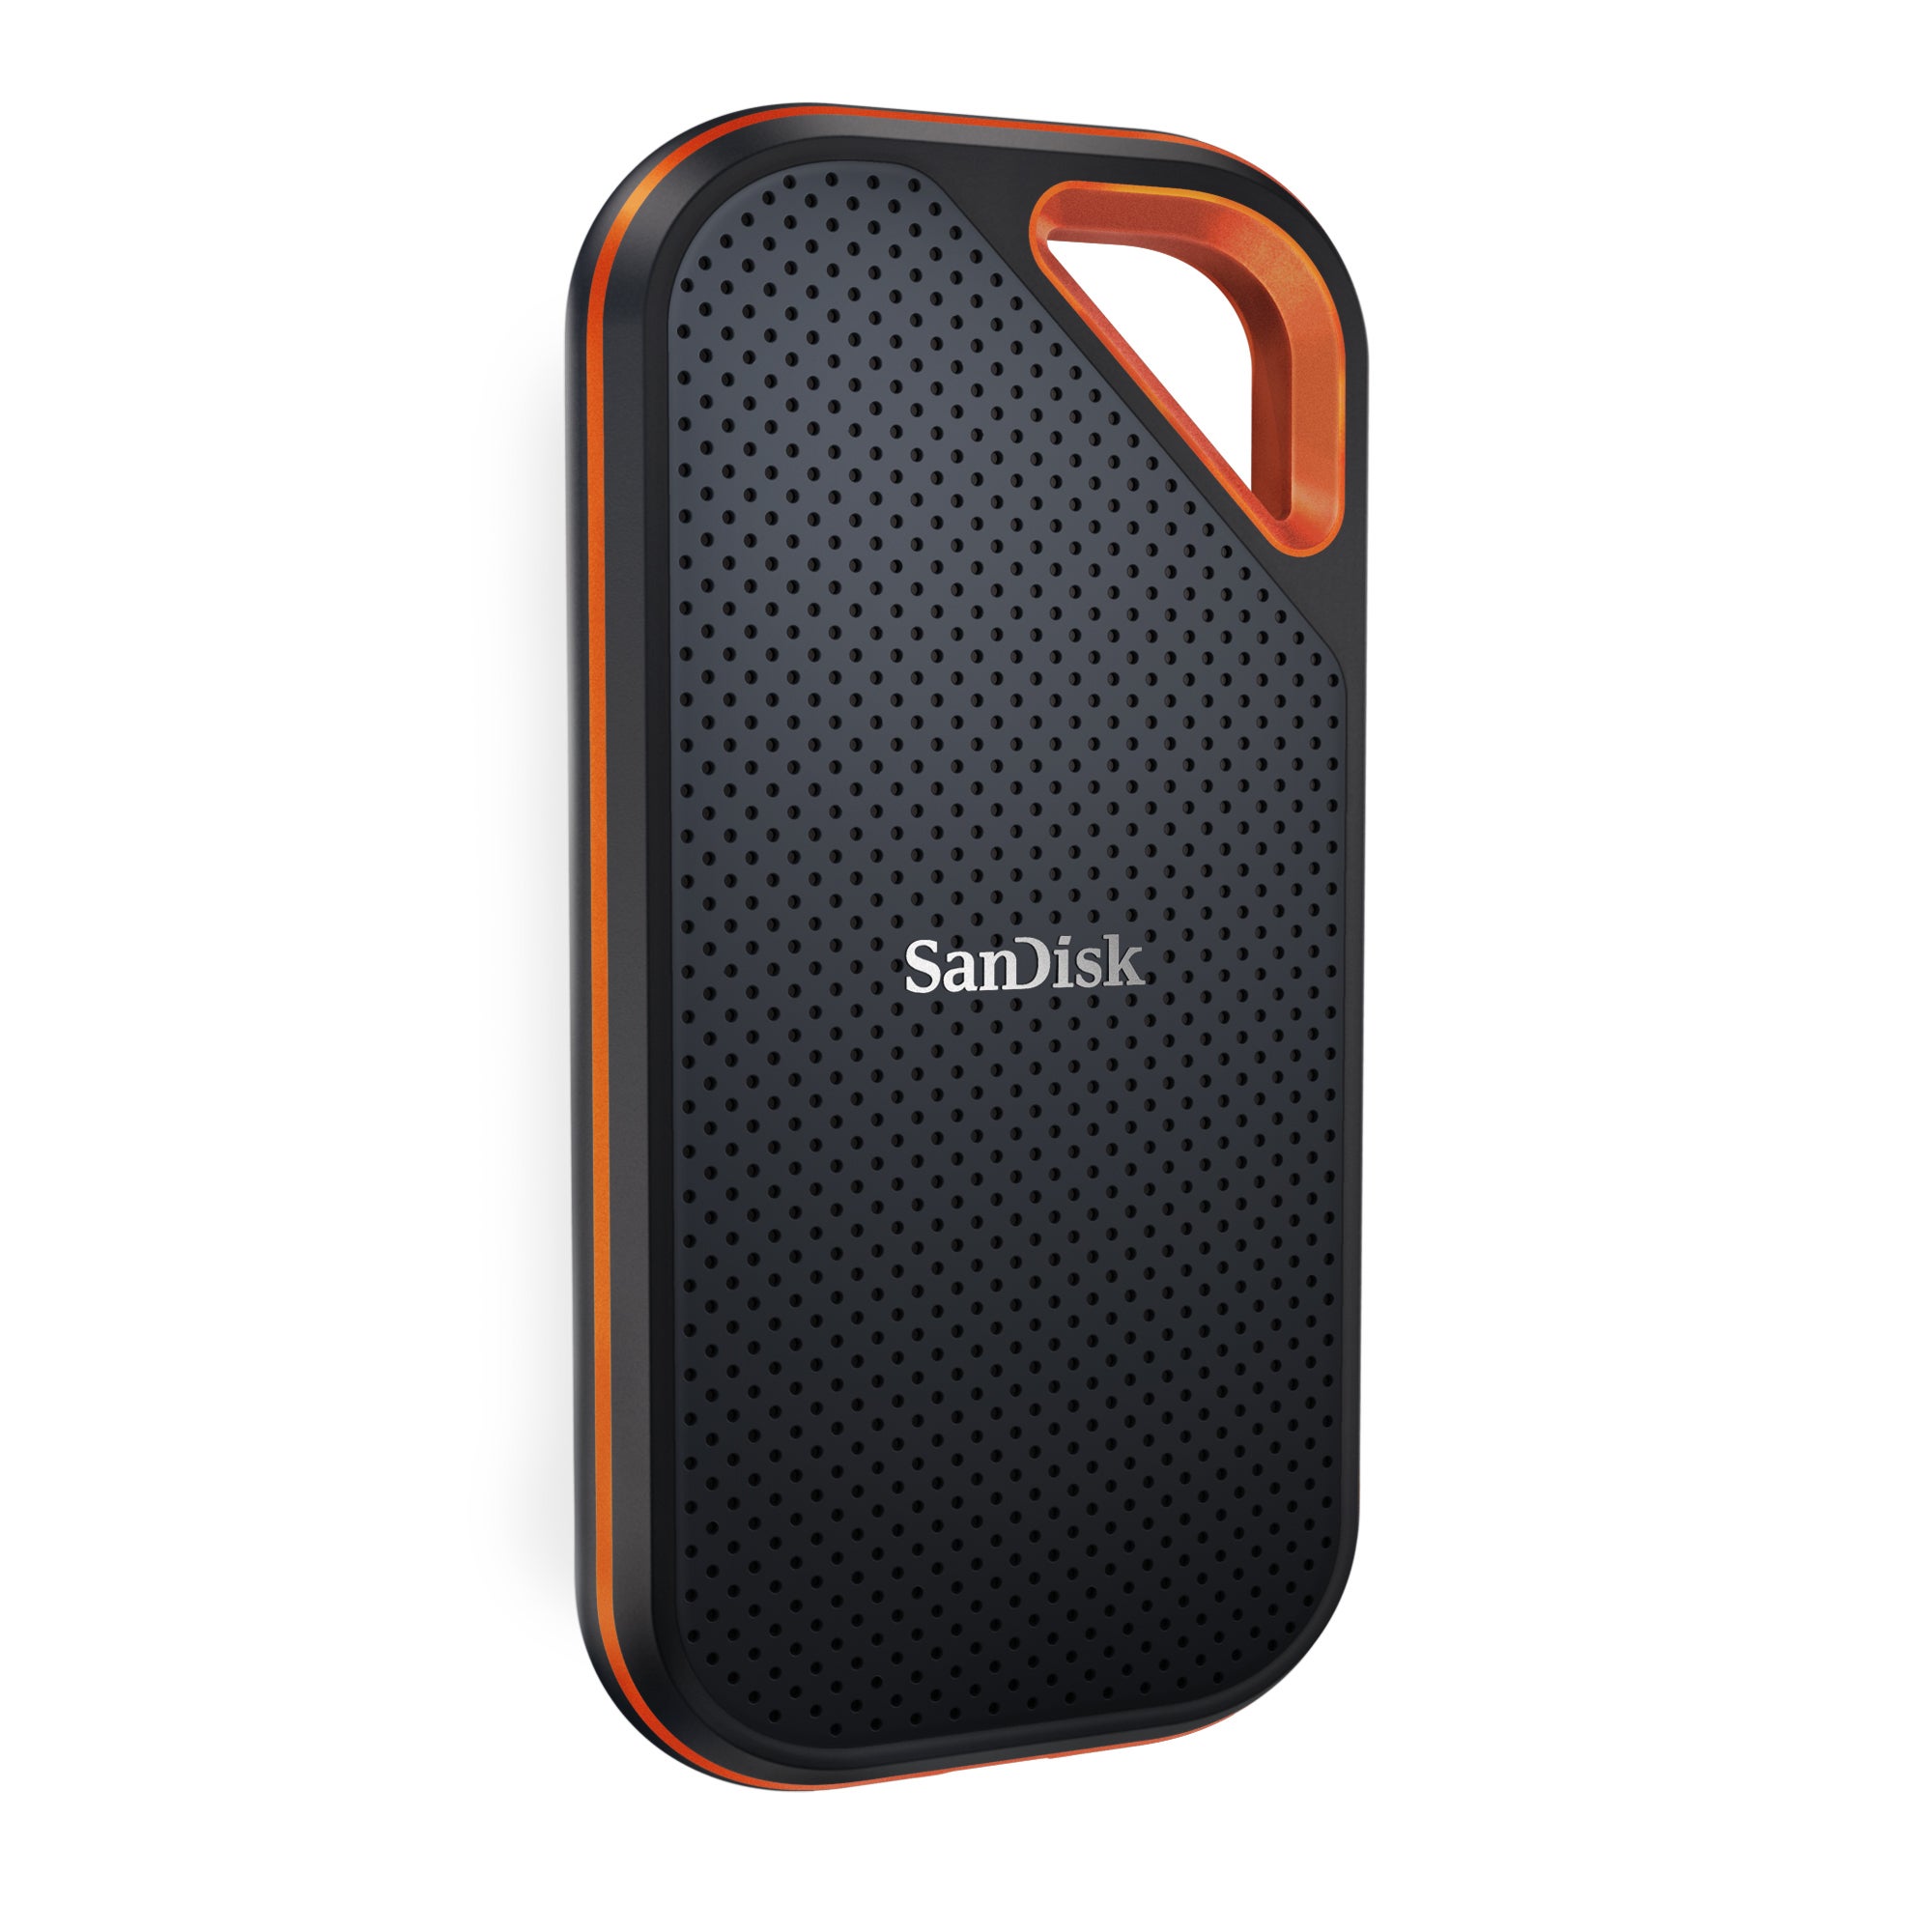 Samsung T7 vs SanDisk Extreme V2, SSD unboxing